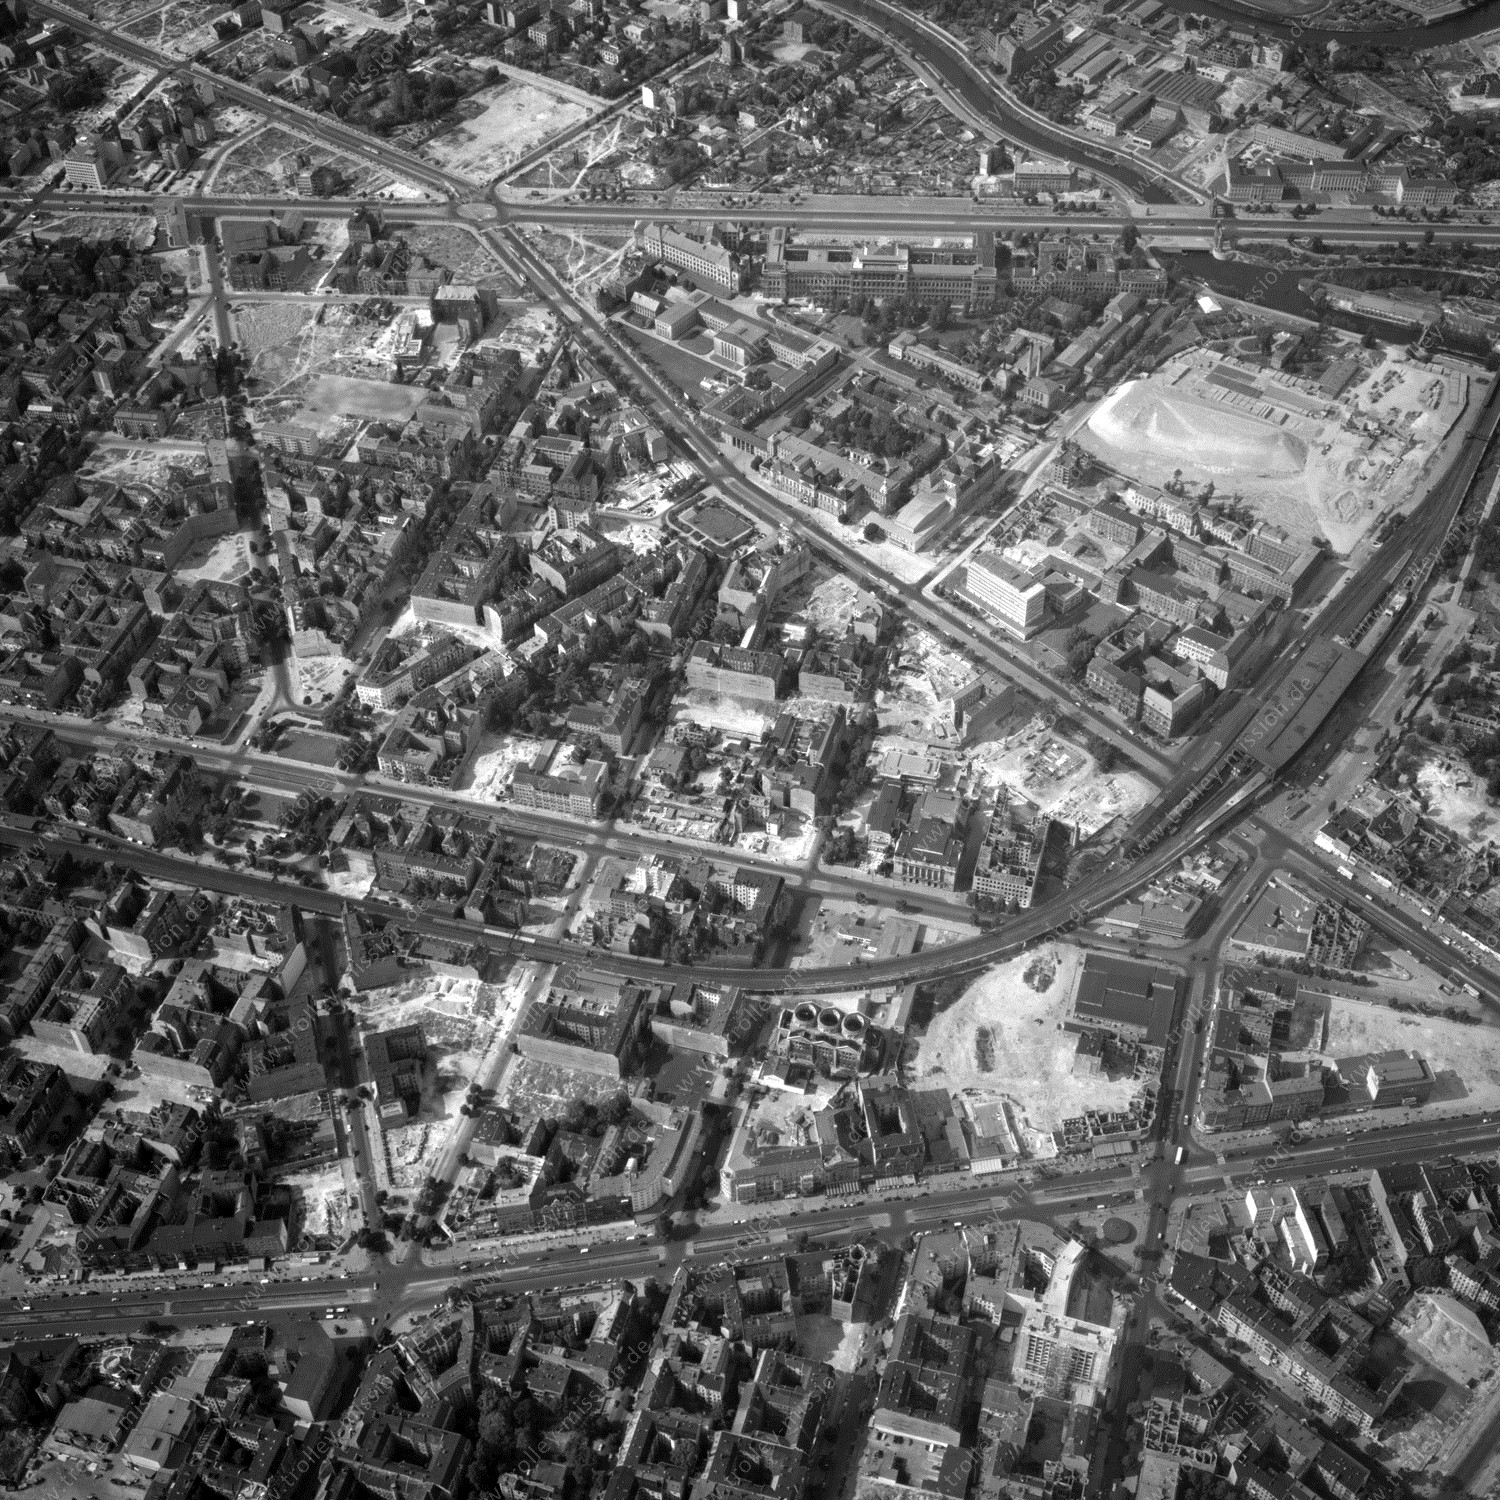 Alte Fotos und Luftbilder von Berlin - Luftbildaufnahme Nr. 06 - Historische Luftaufnahmen von West-Berlin aus dem Jahr 1954 - Flugstrecke Yankee